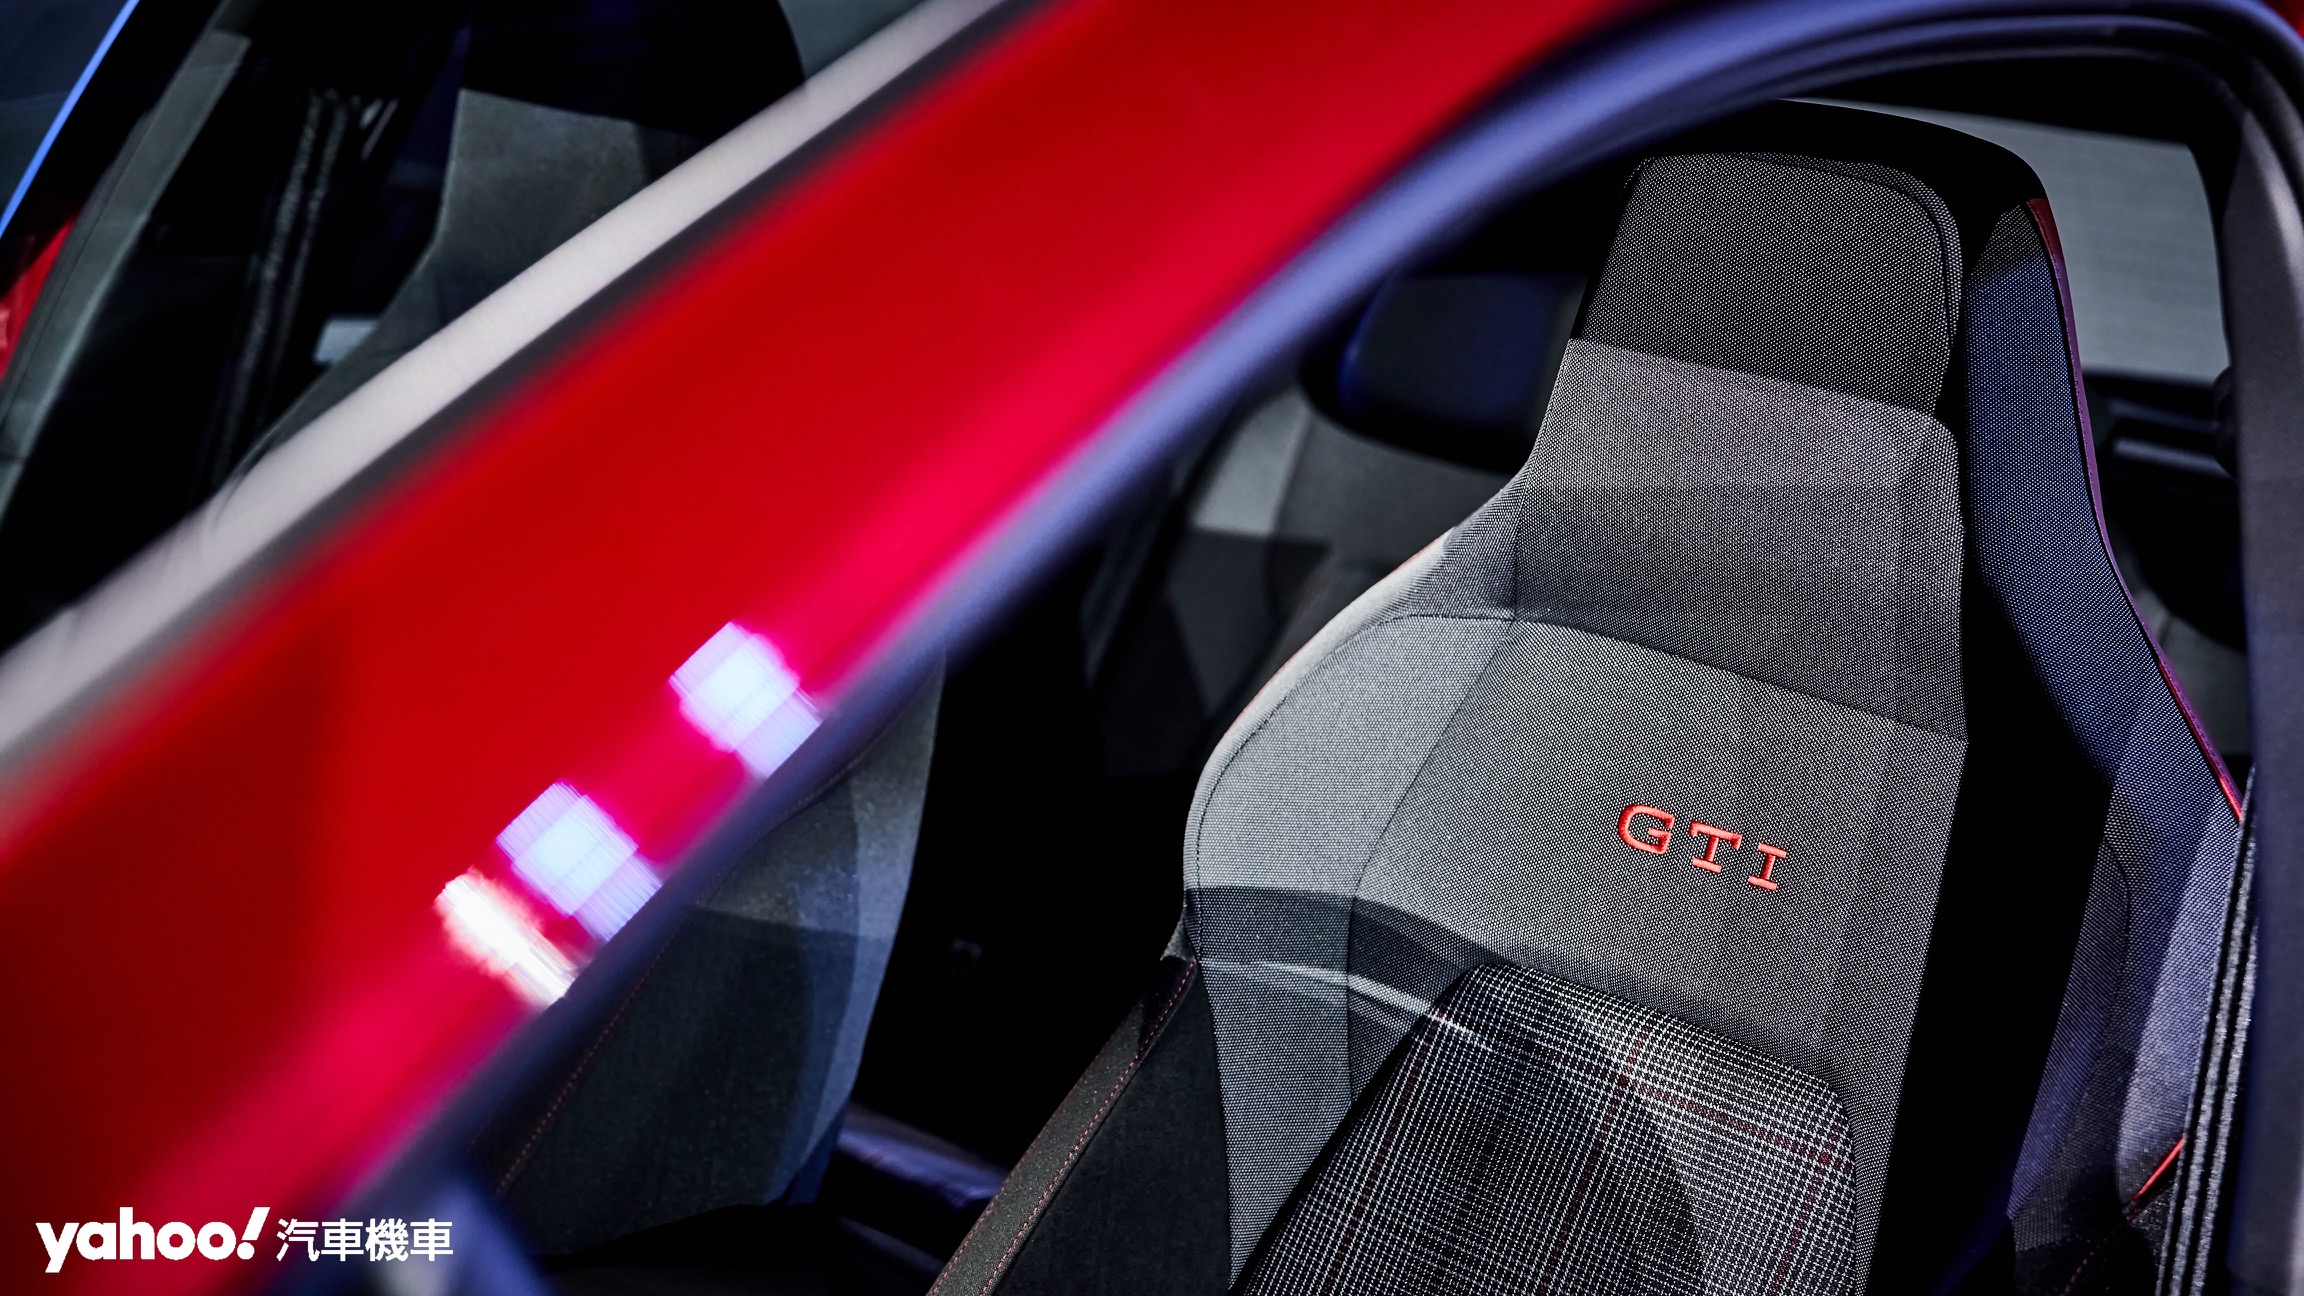 Volkswagen Golf GTi Edition 50在座椅部分特別採用了致敬傳統的格紋織布點綴跑車化座椅以展現經典樣貌。